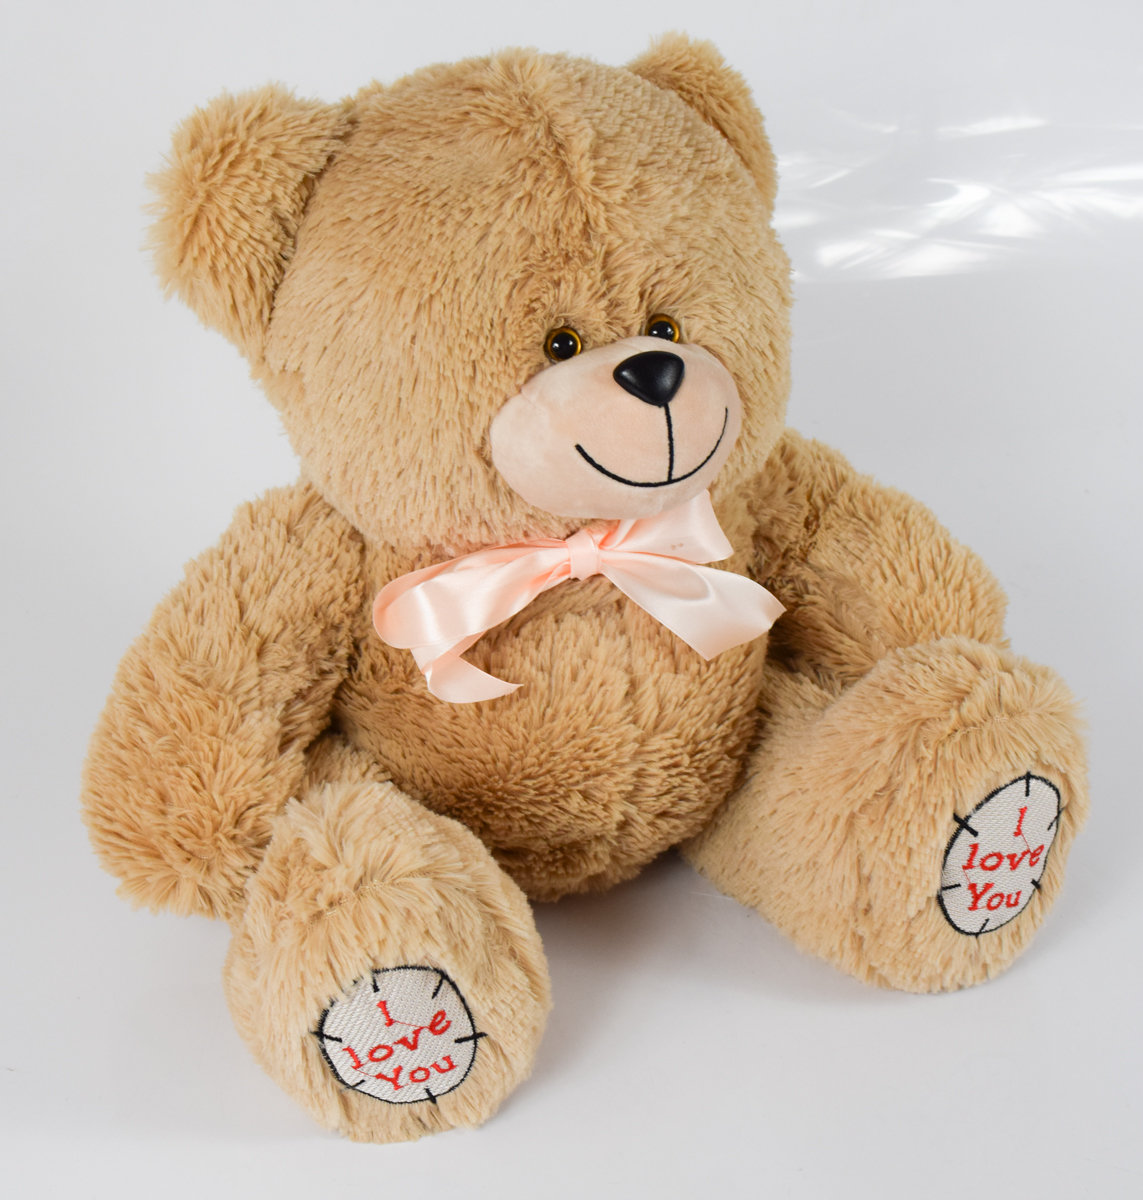 Мишка плюшевый мягкий медведь Тед 50 см. Мягкая игрушка медведь. Цвет темный латте.